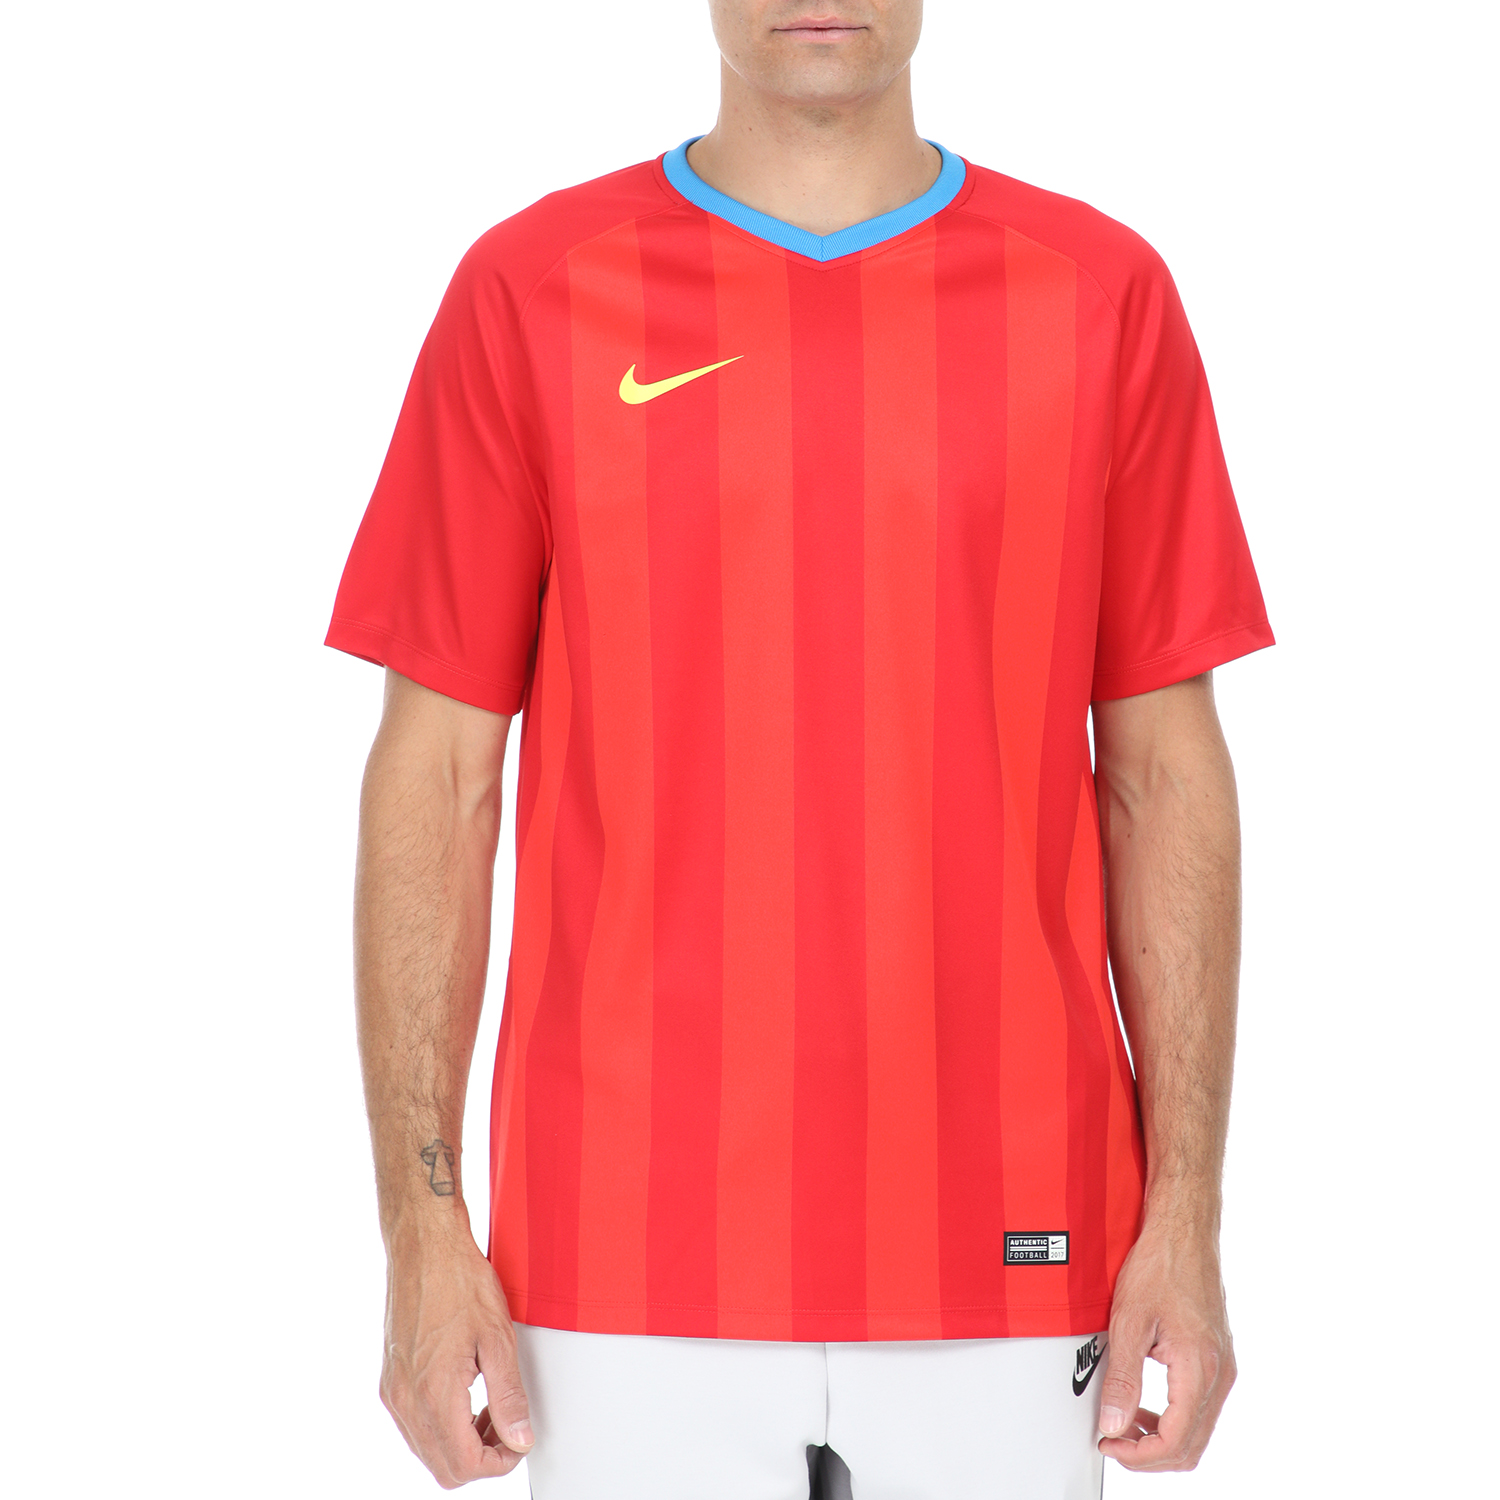 Ανδρικά/Ρούχα/Αθλητικά/T-shirt NIKE - Ανδρικό t-shirt NIKE FCSB BRT FTBL κόκκινο